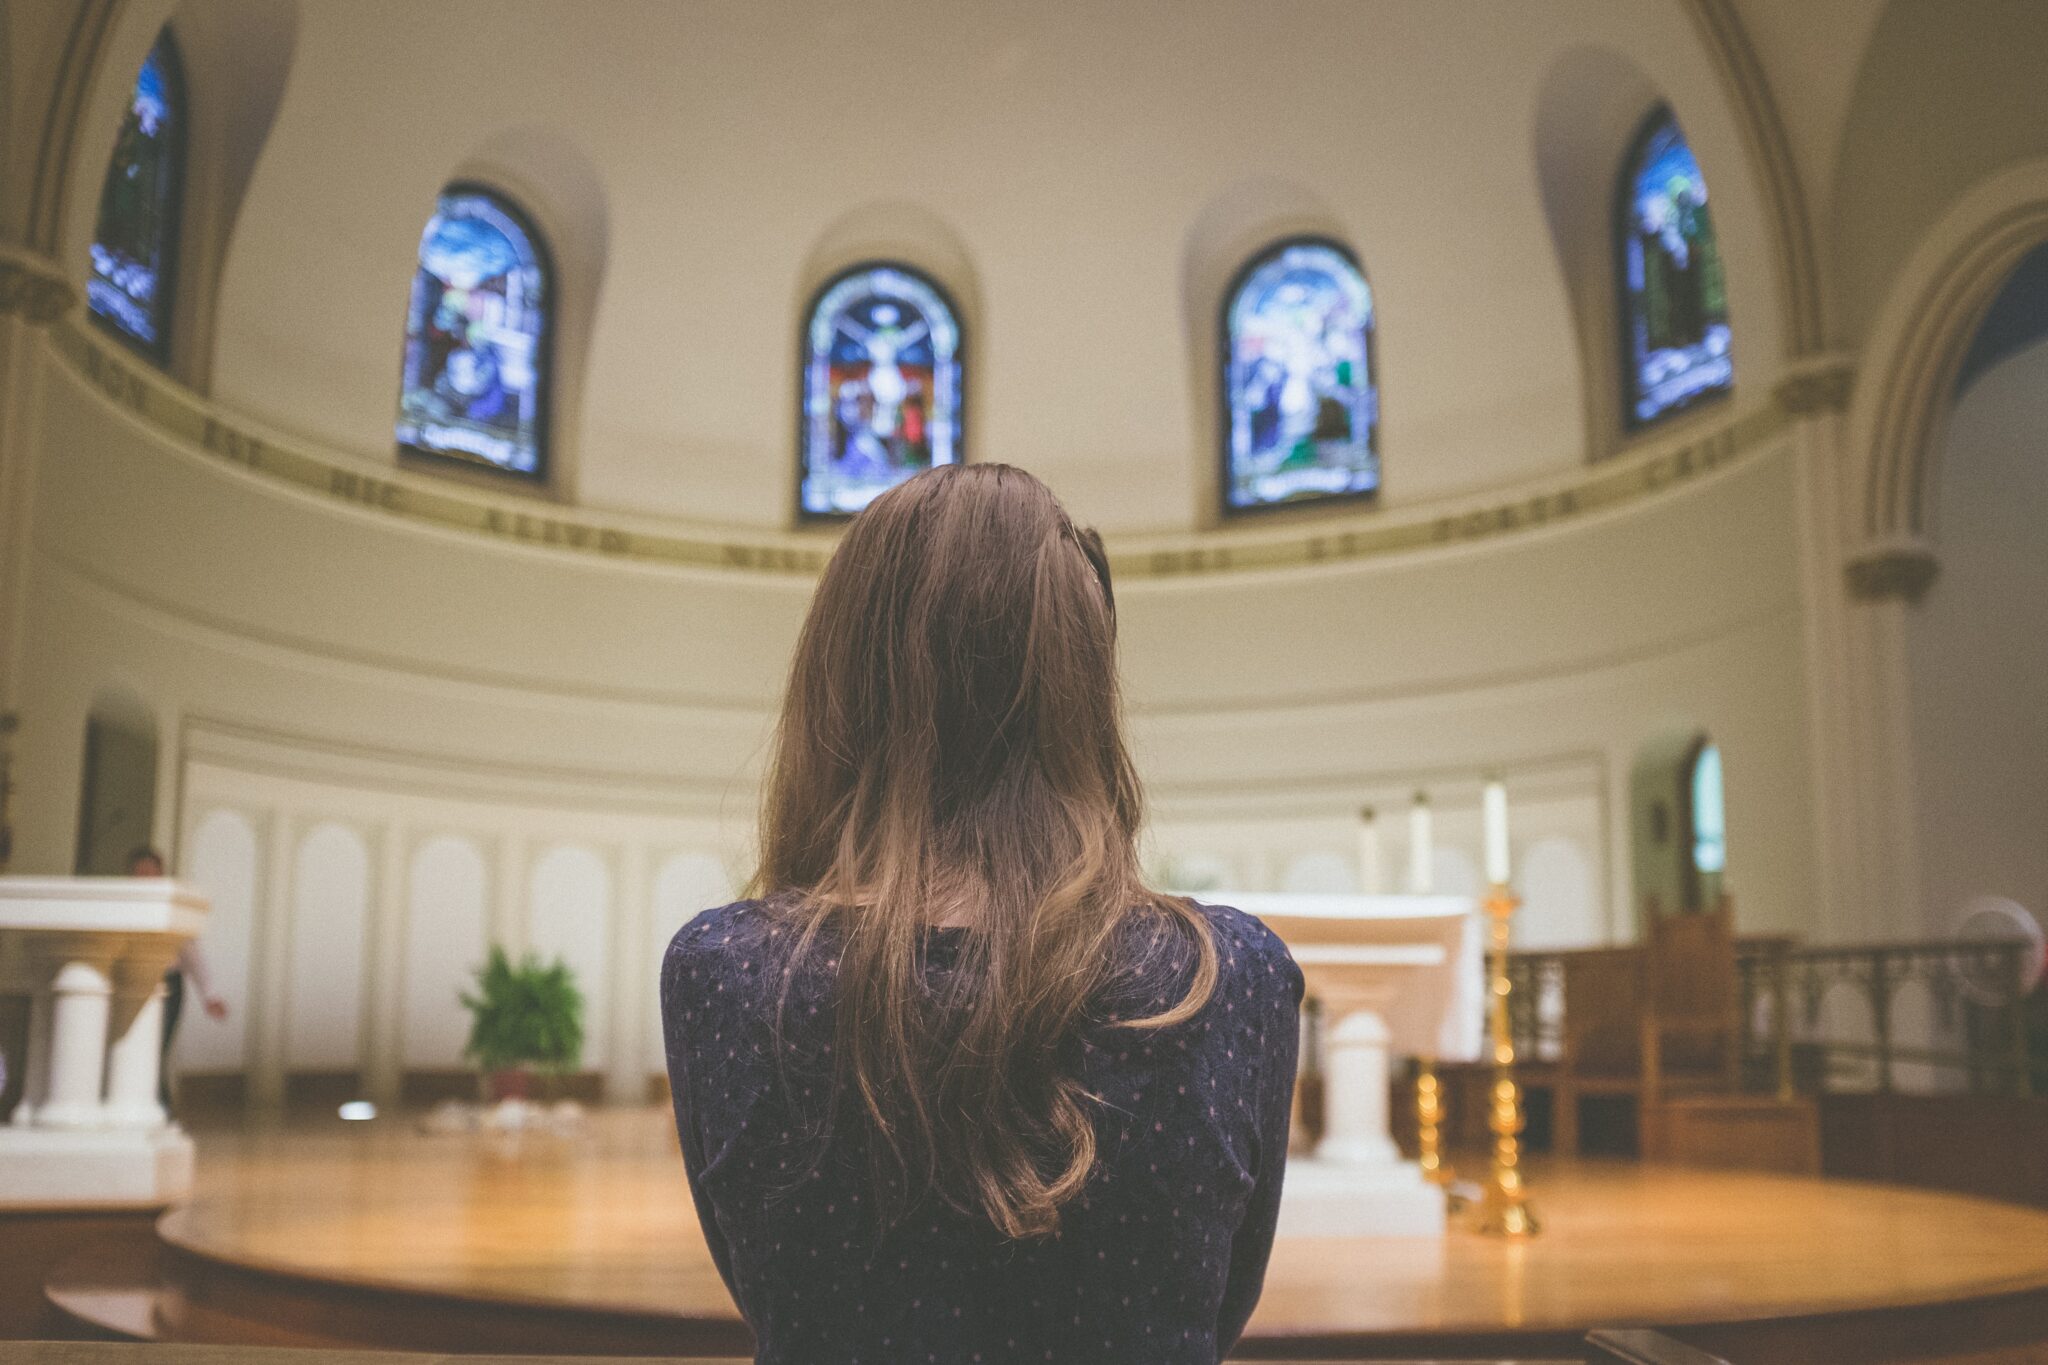 Woman praying in church | Photo by Kenny Eliason on Unsplash